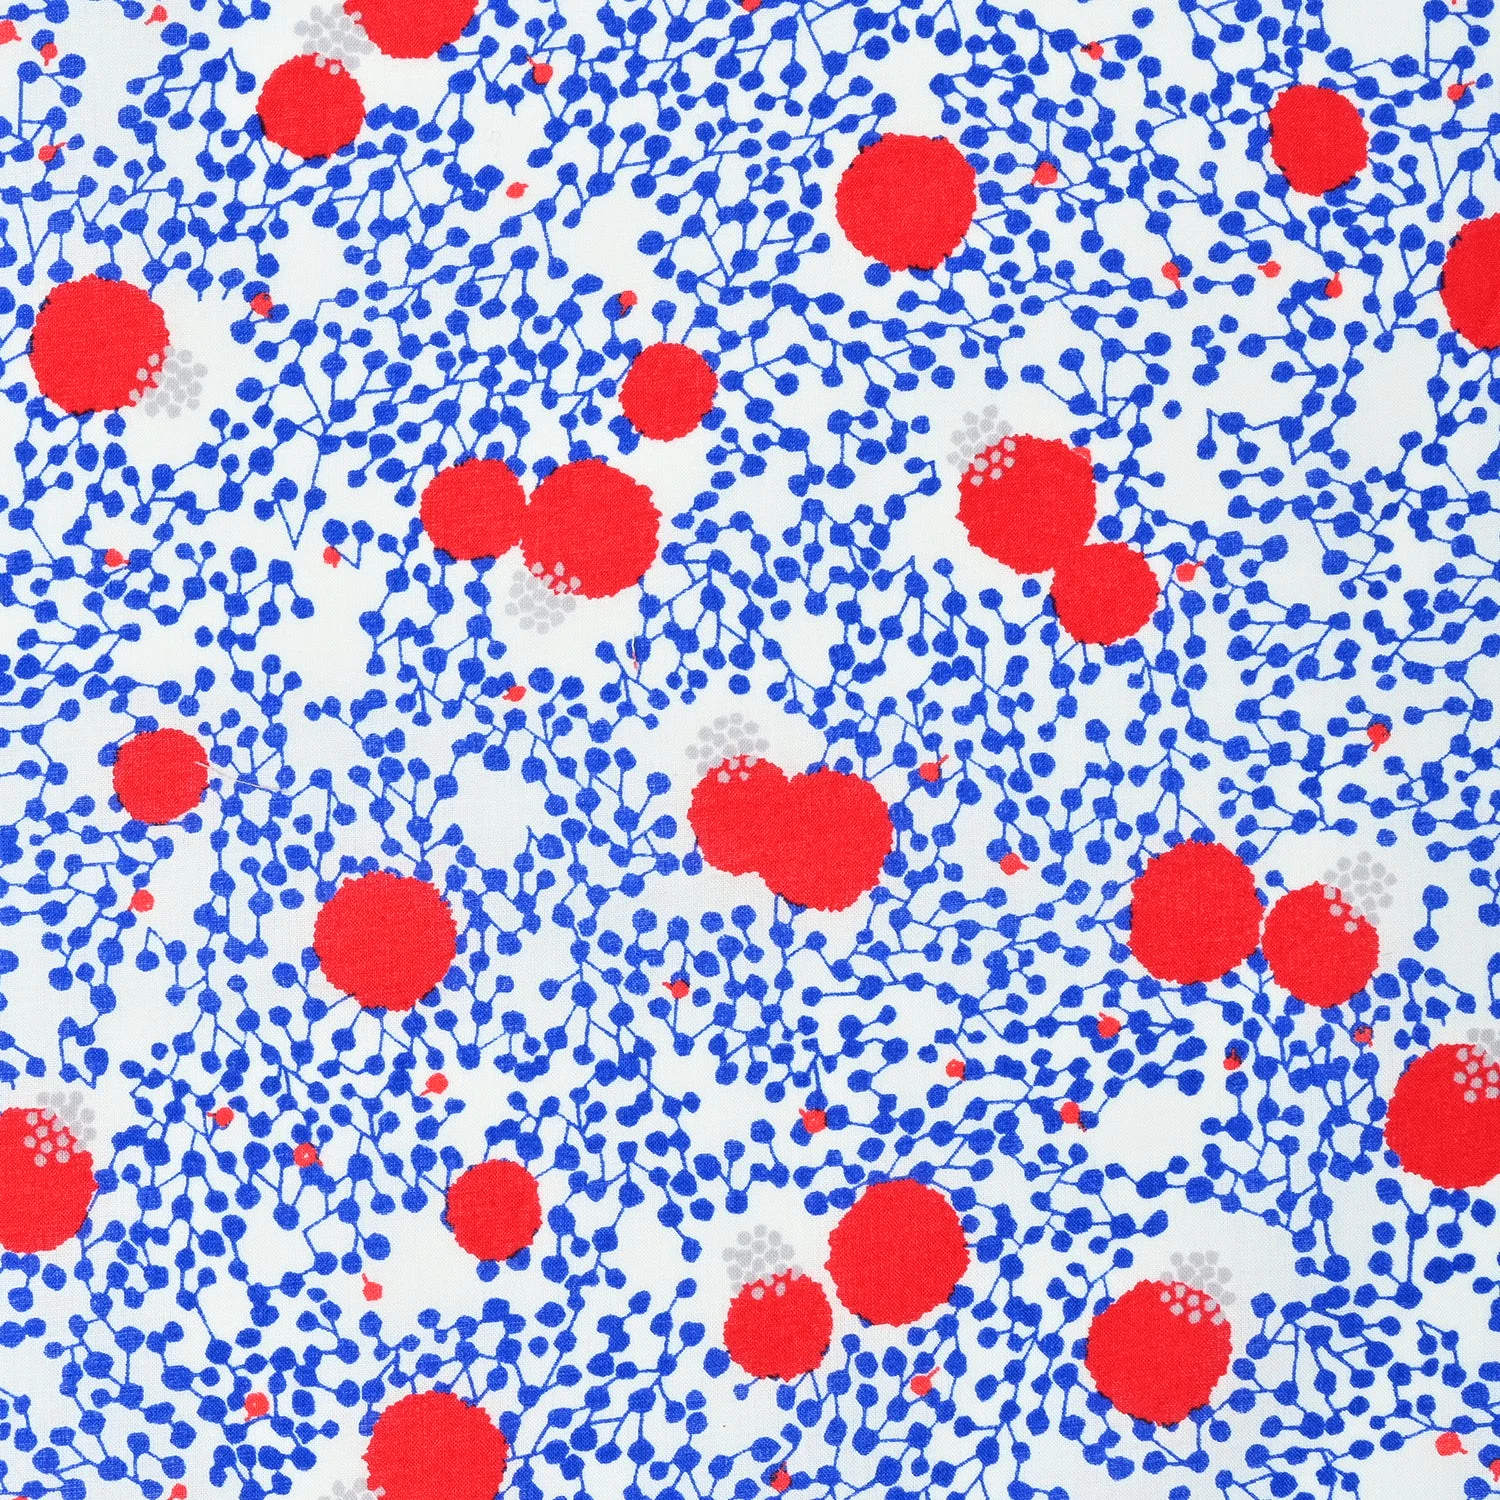 Moderner japanischer Stoff in Weiß und Blau mit roten Punkten